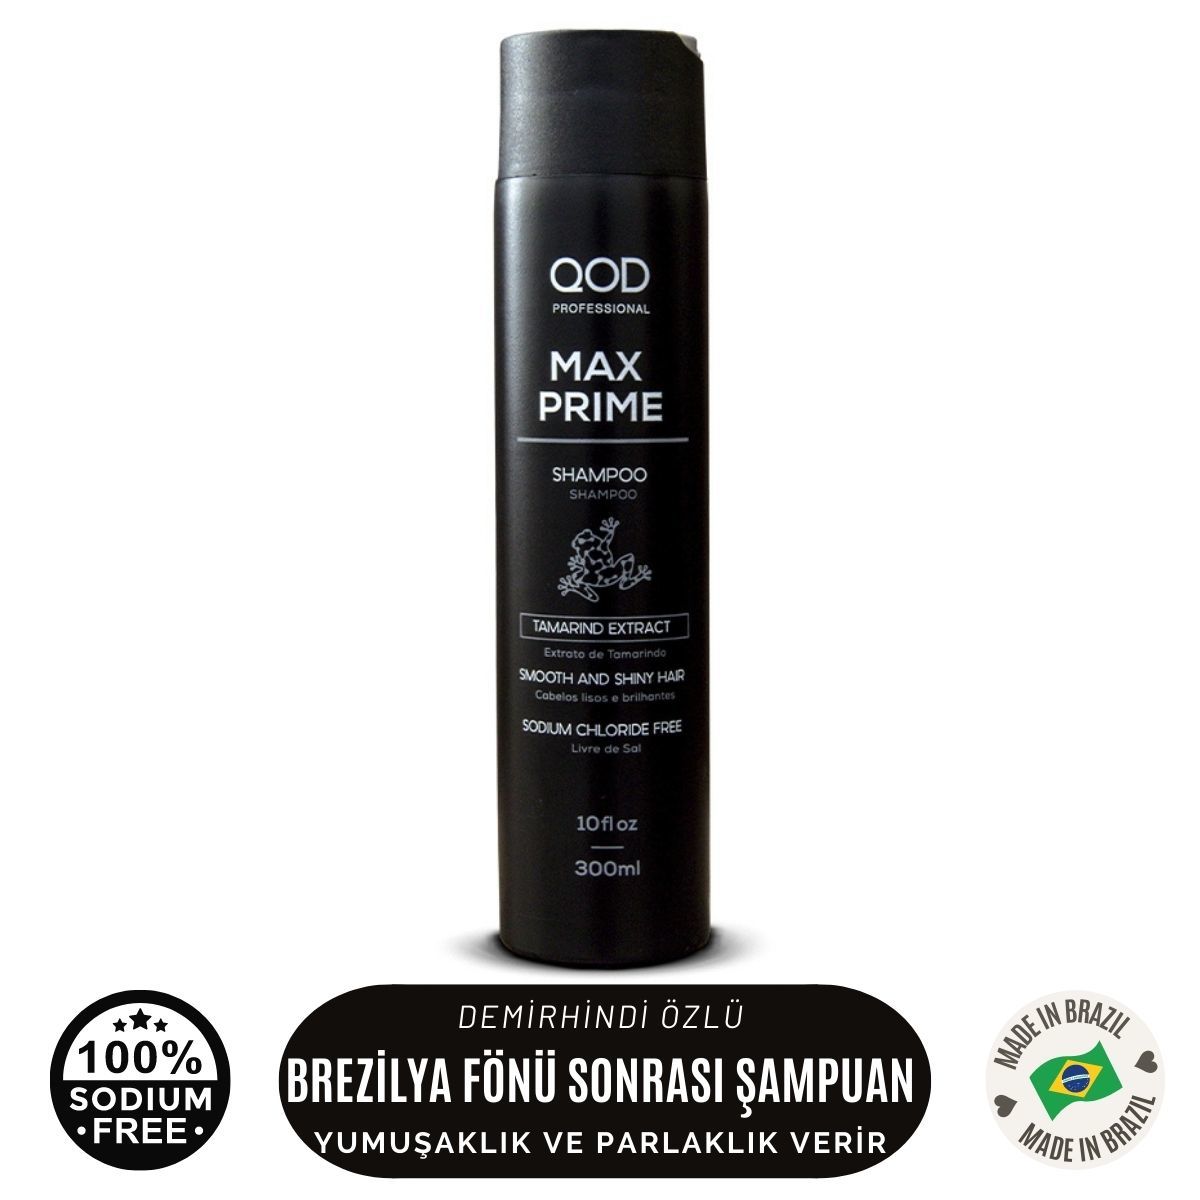 QOD Profesyonel Max Prime  Keratin  Bakım  Şampuanı  300 ml - Brezilya Fönü Sonrası After  Şampuan